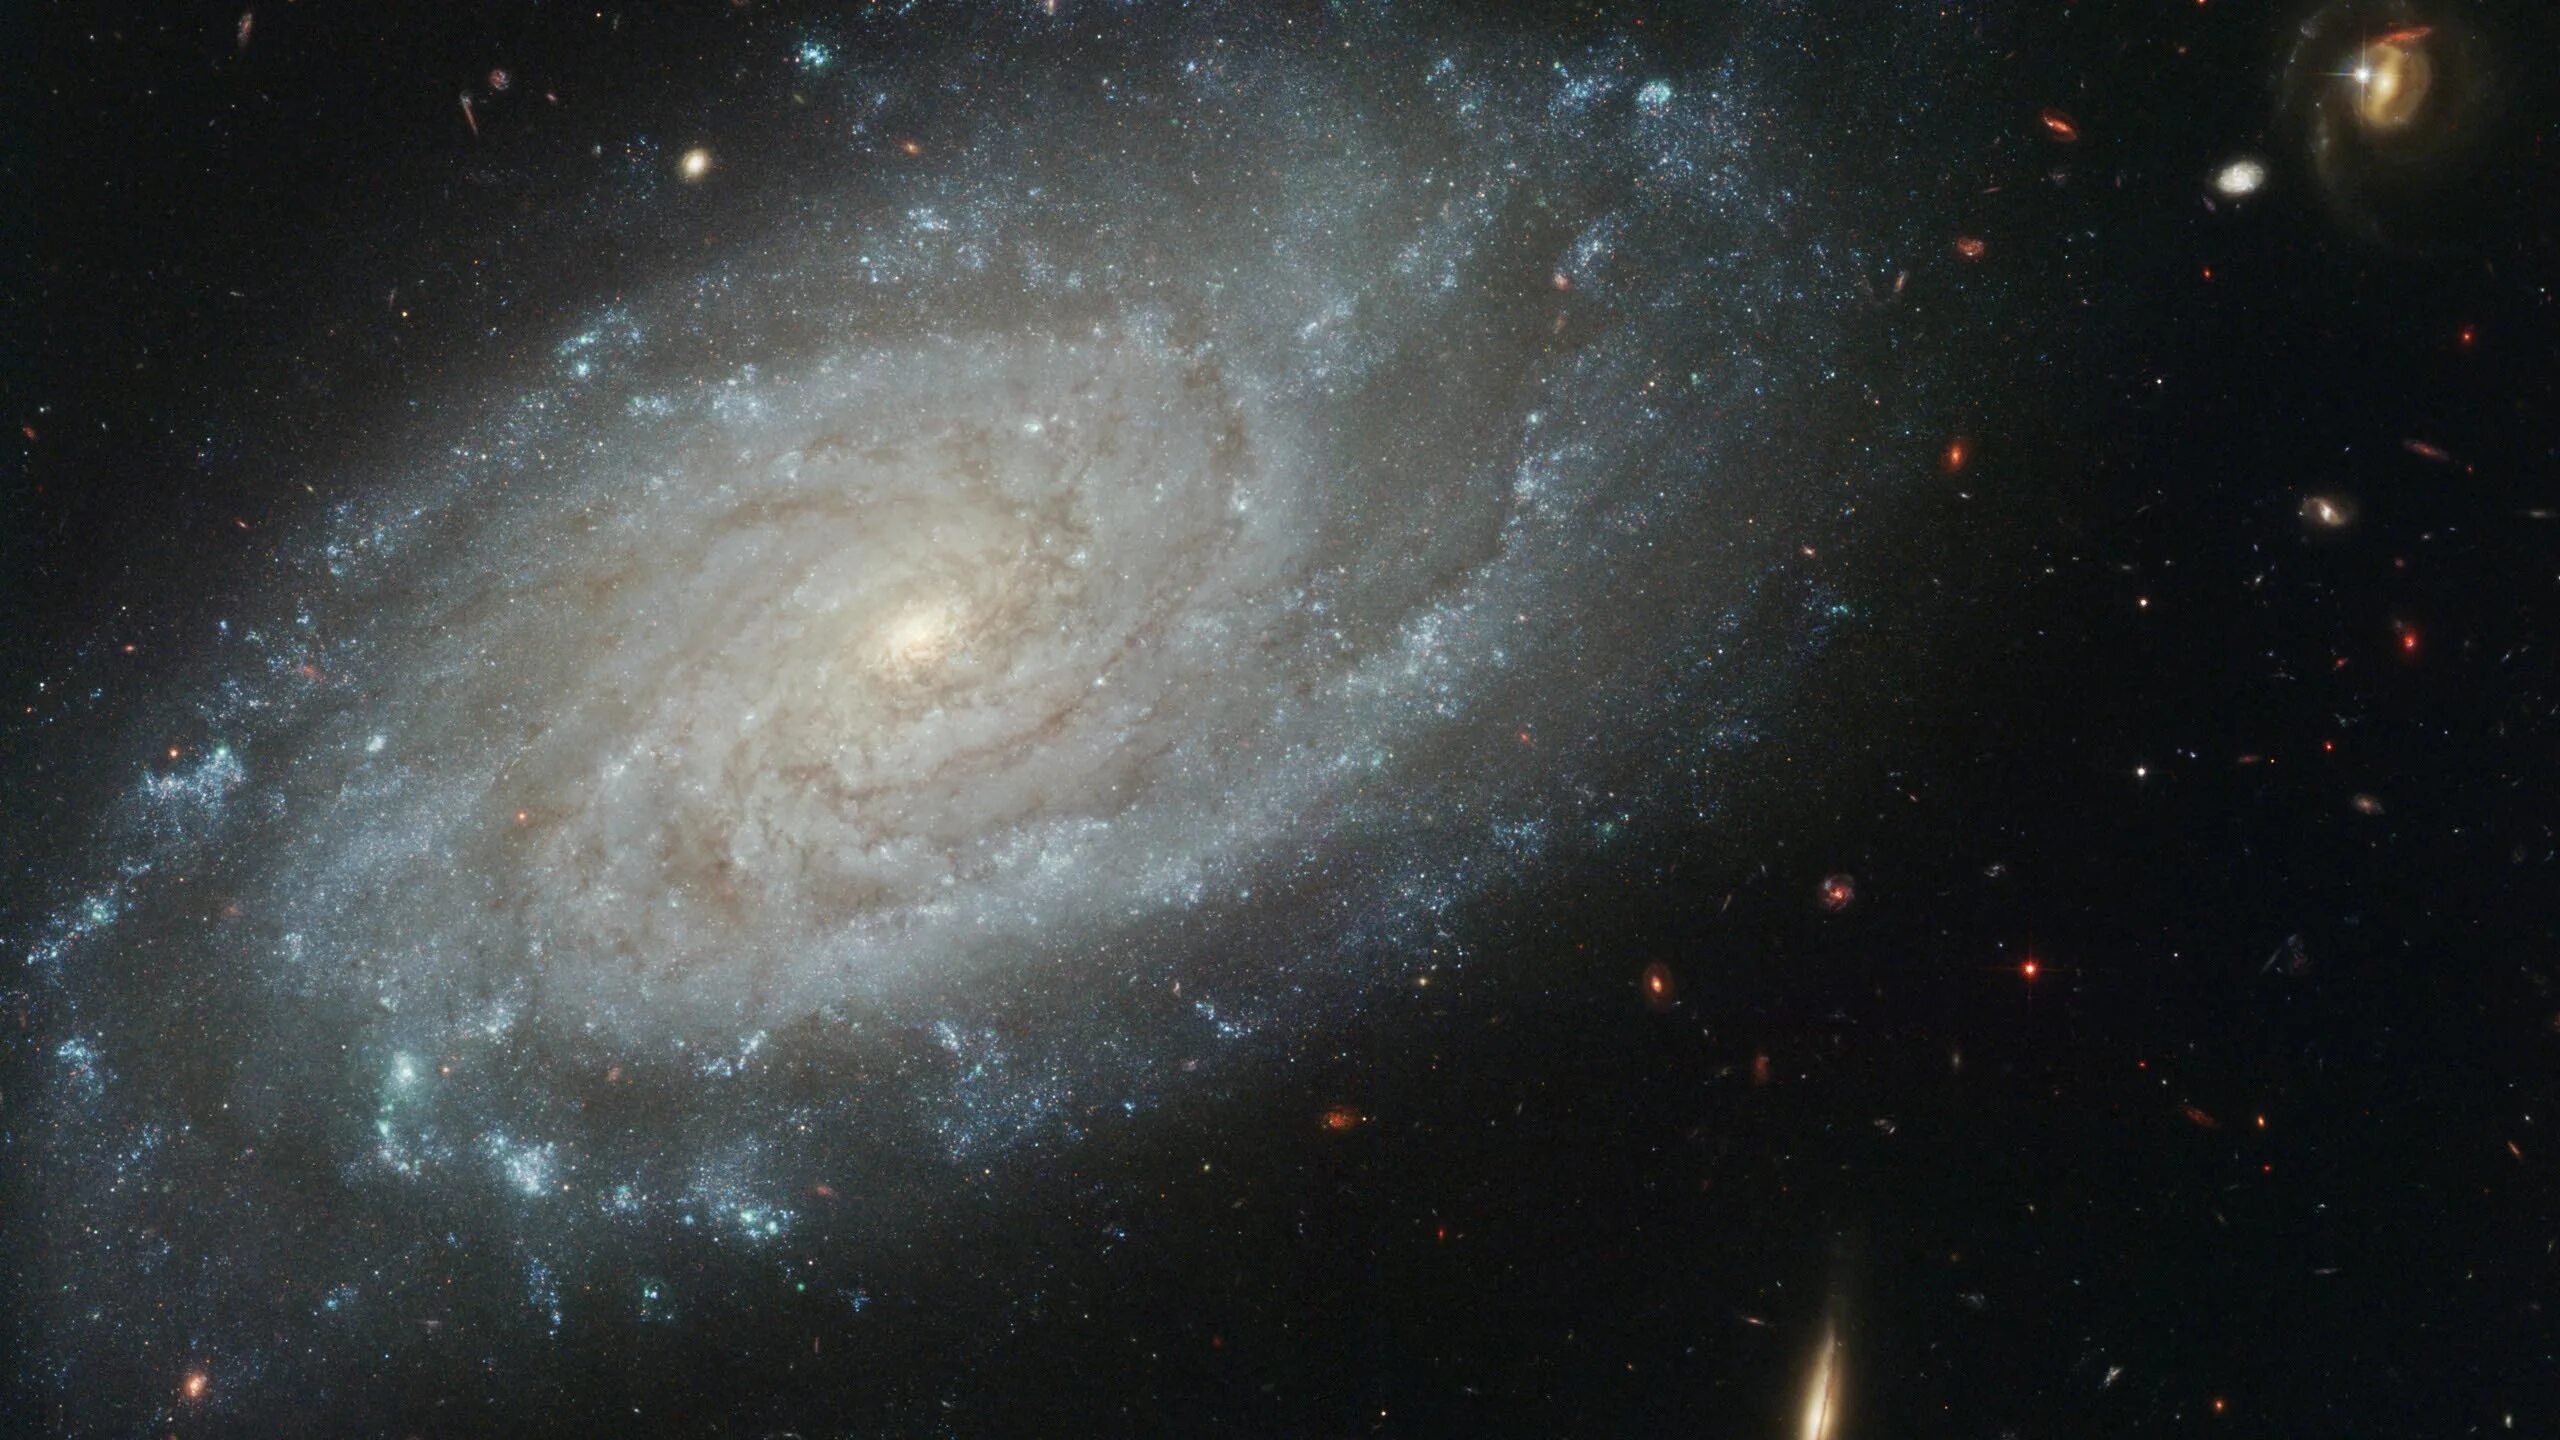 Ngc. Галактика NGC 3370. Космос Галактика Млечный путь. Вселенная Хаббл Галактика Млечный путь. Галактика водоворот ХАБЛ.